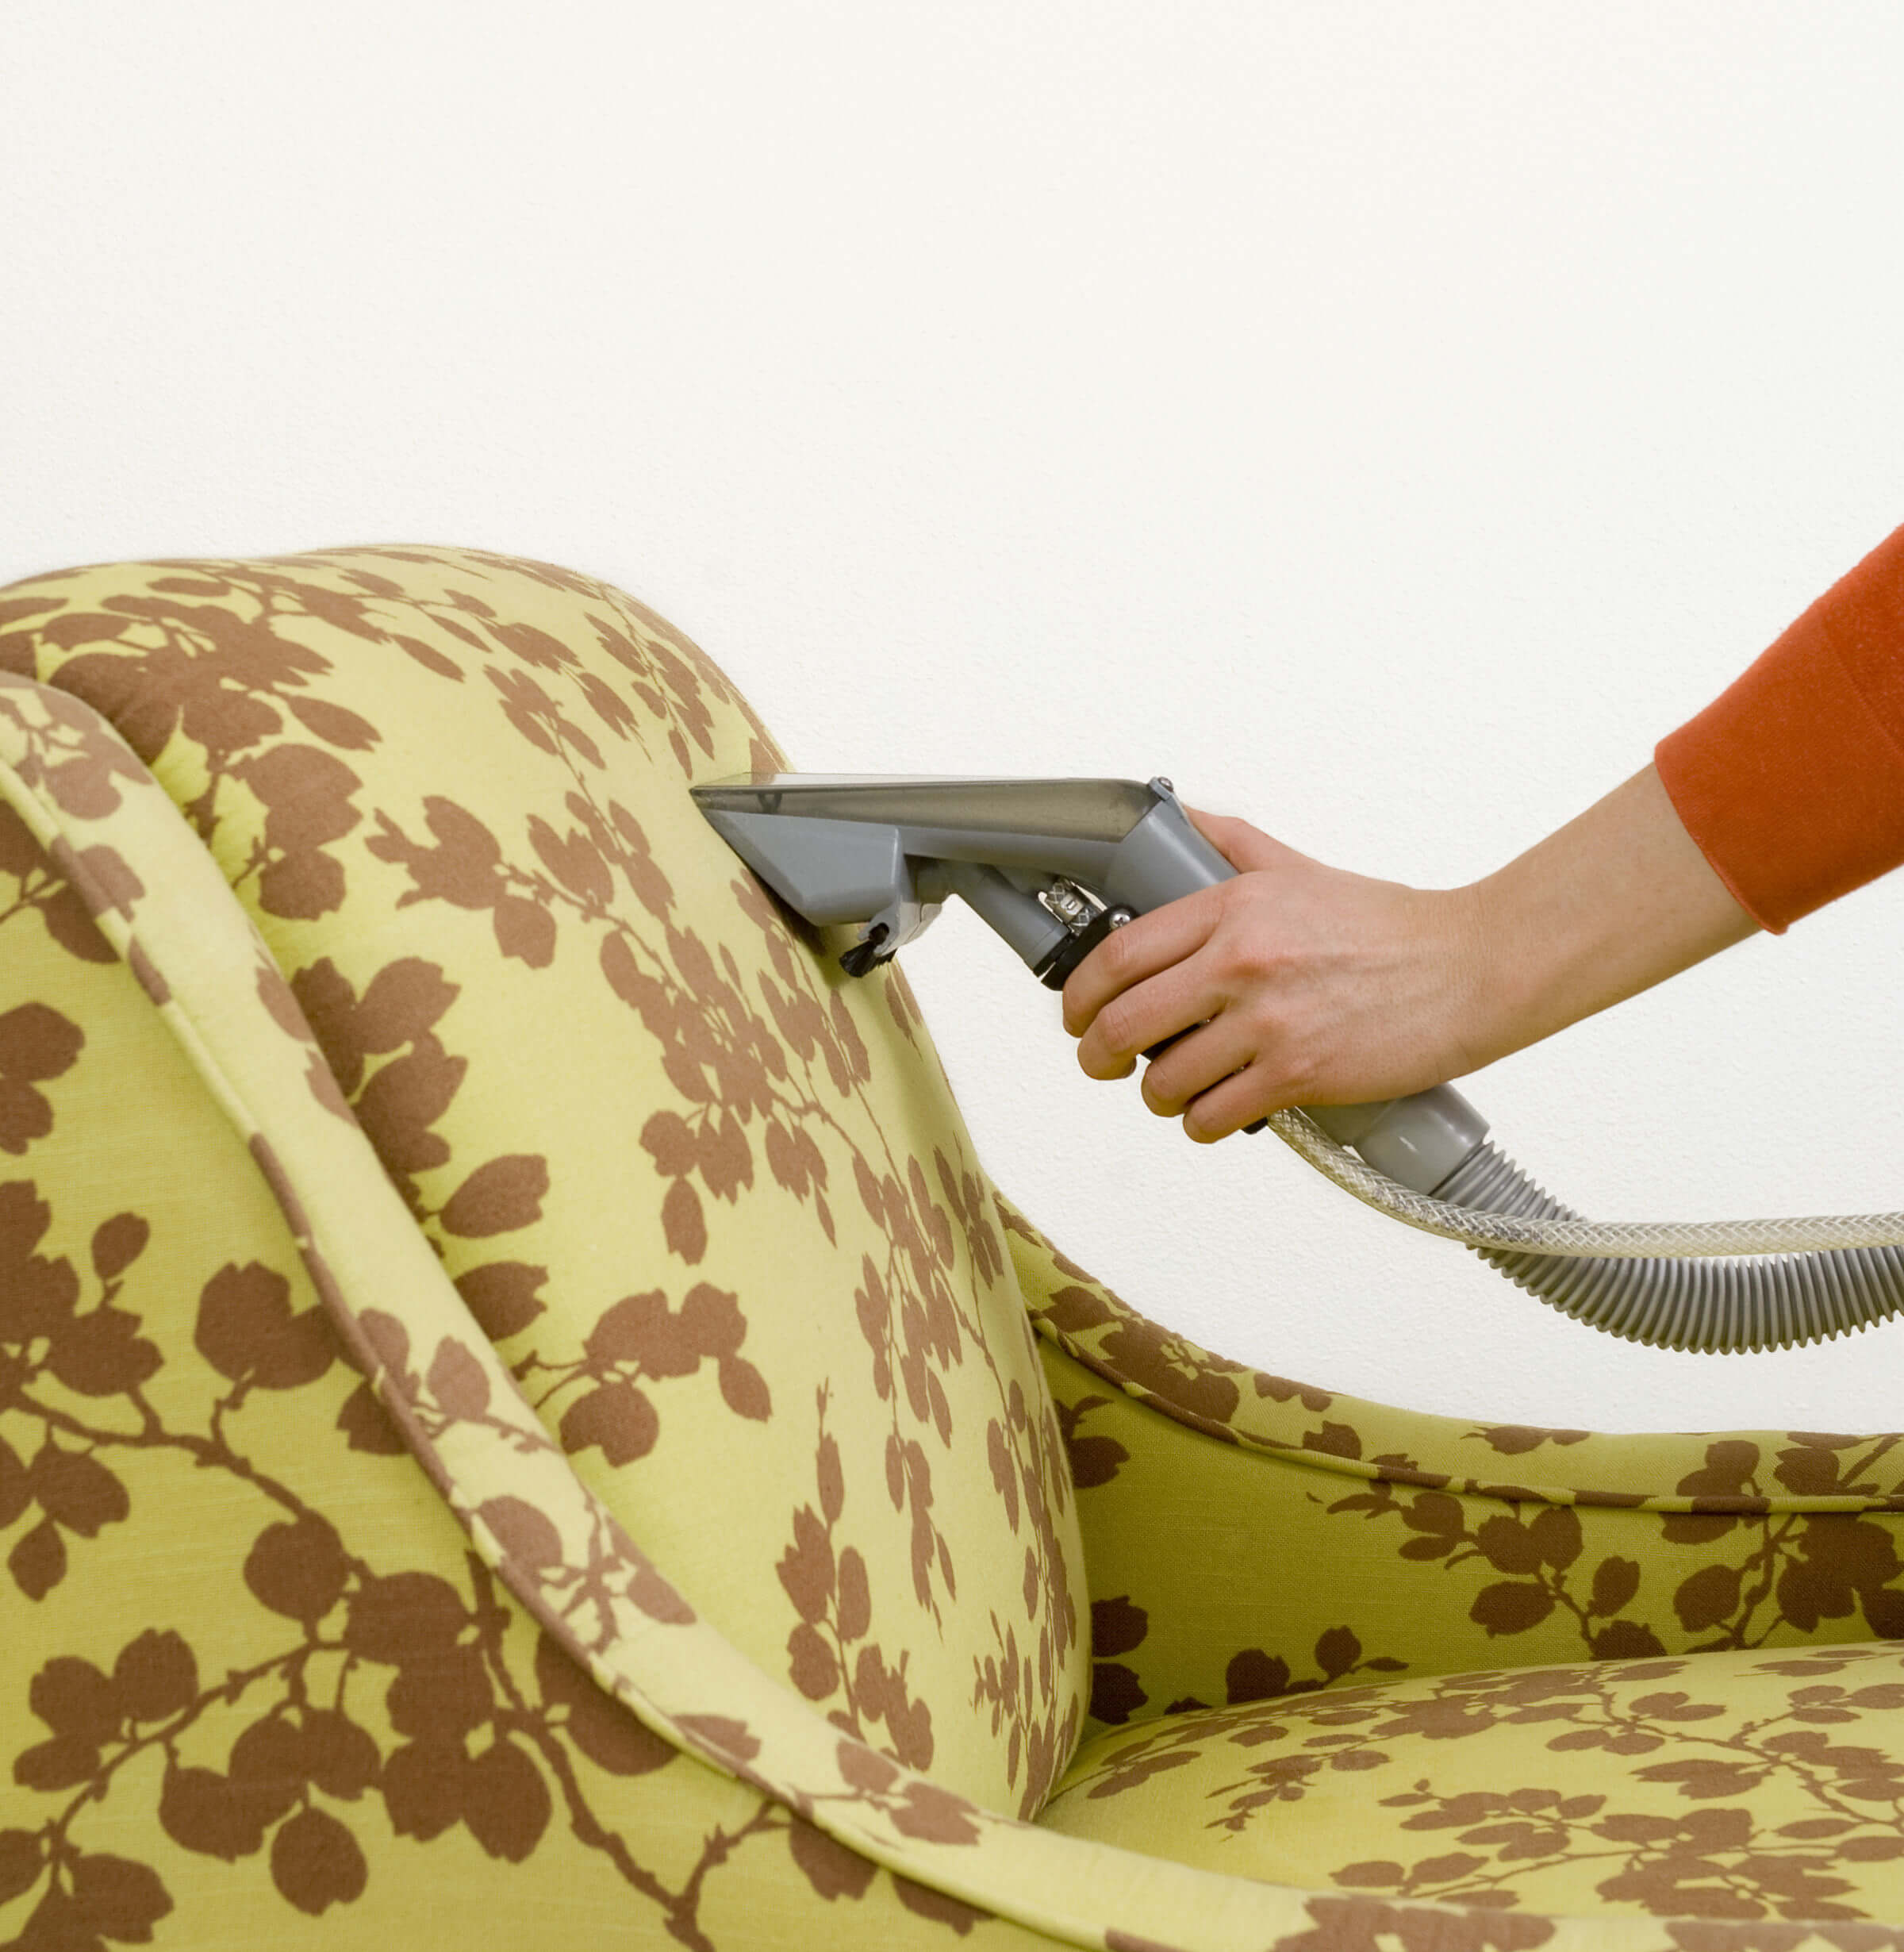 чистка мягкой мебели пароочистителем на дому